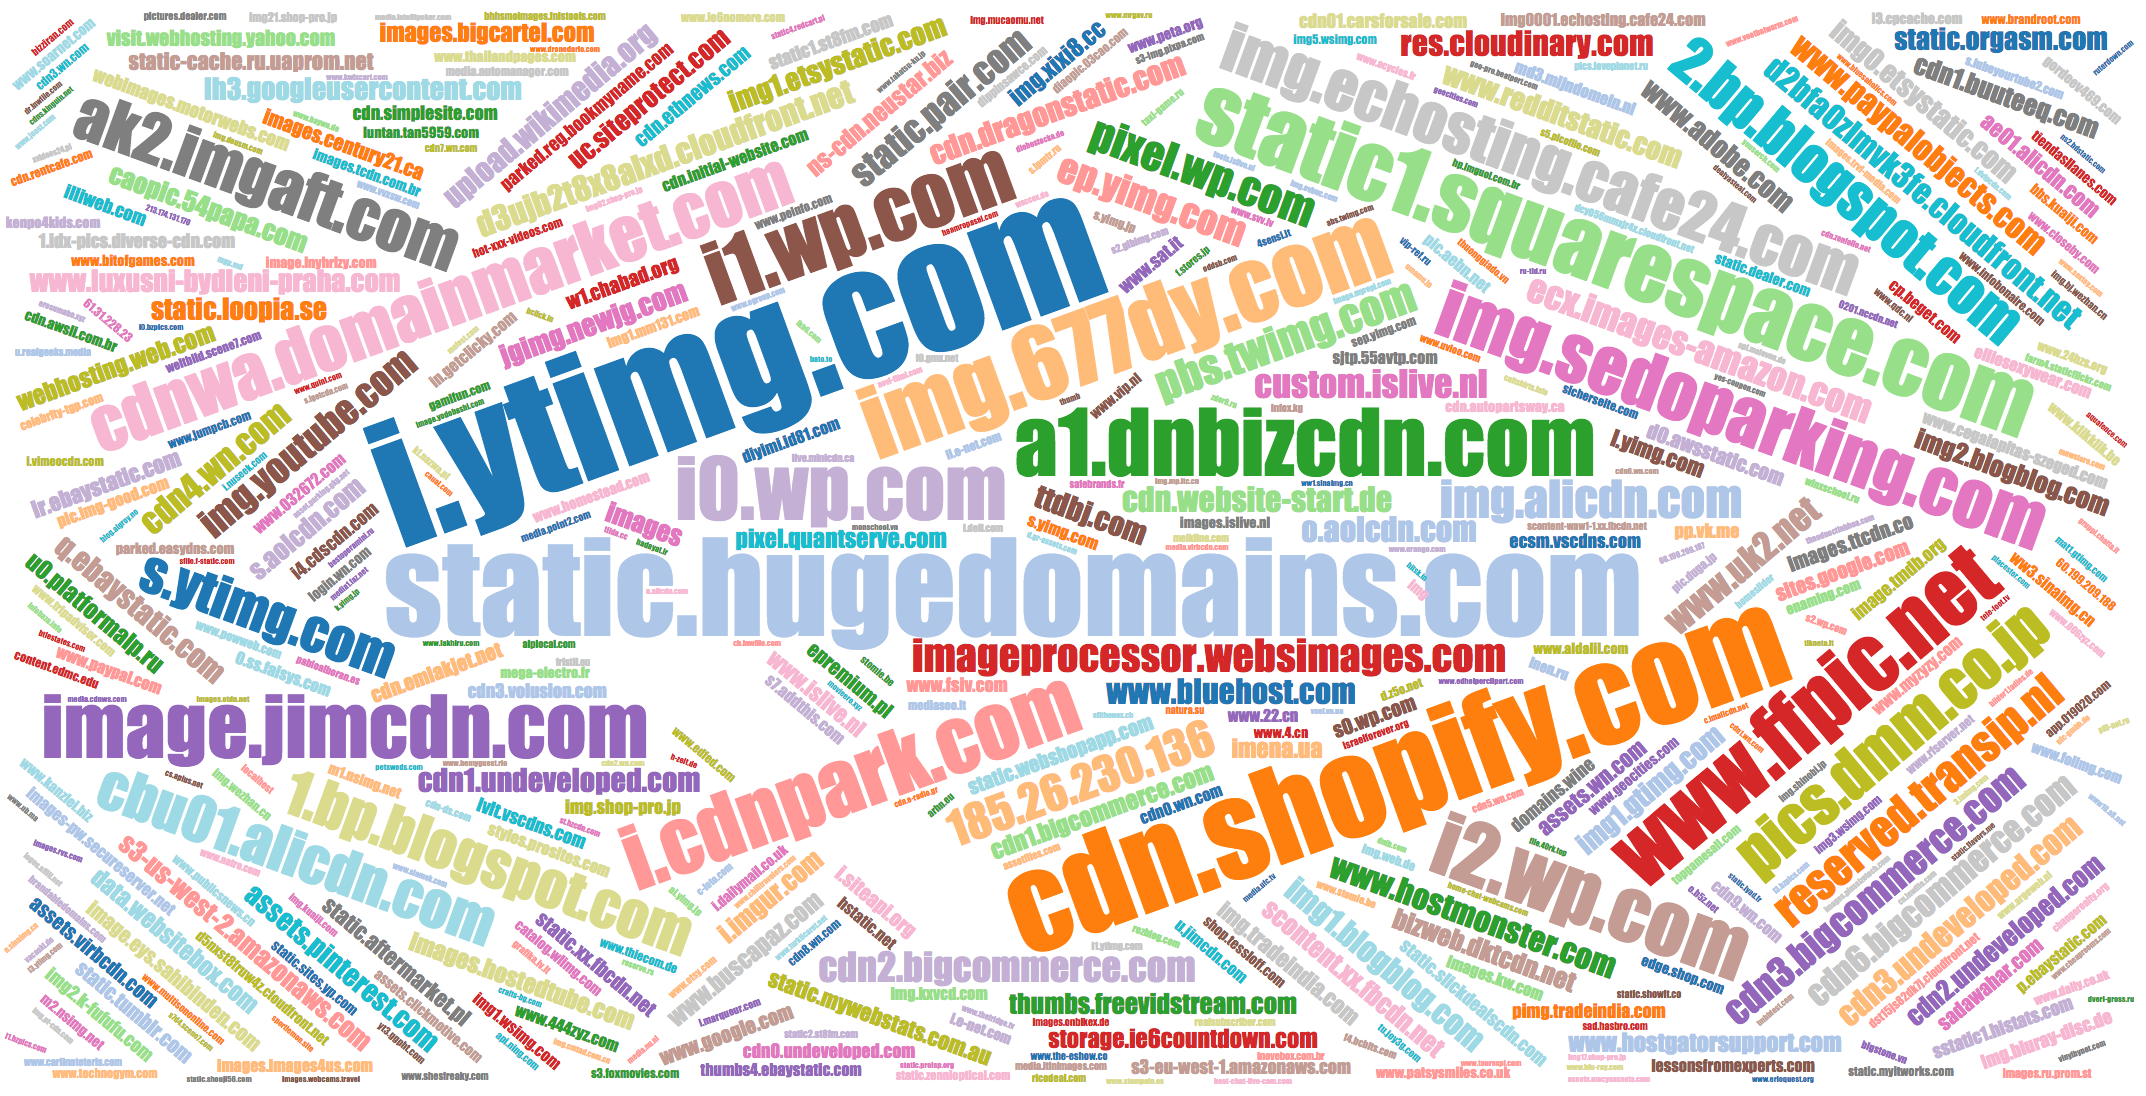 Popular names of IMG domains i.ytimg.com, static1.squarespace.com, etc.